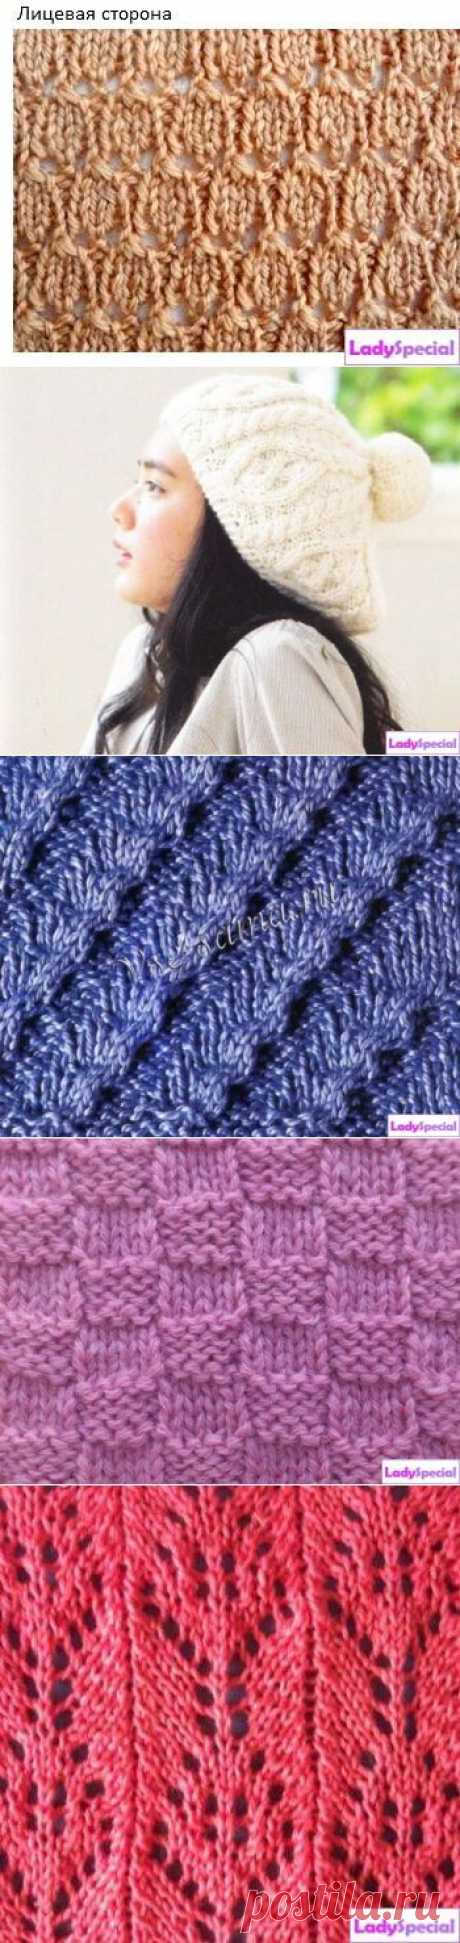 Узоры для вязания шапок спицами | Домохозяйки